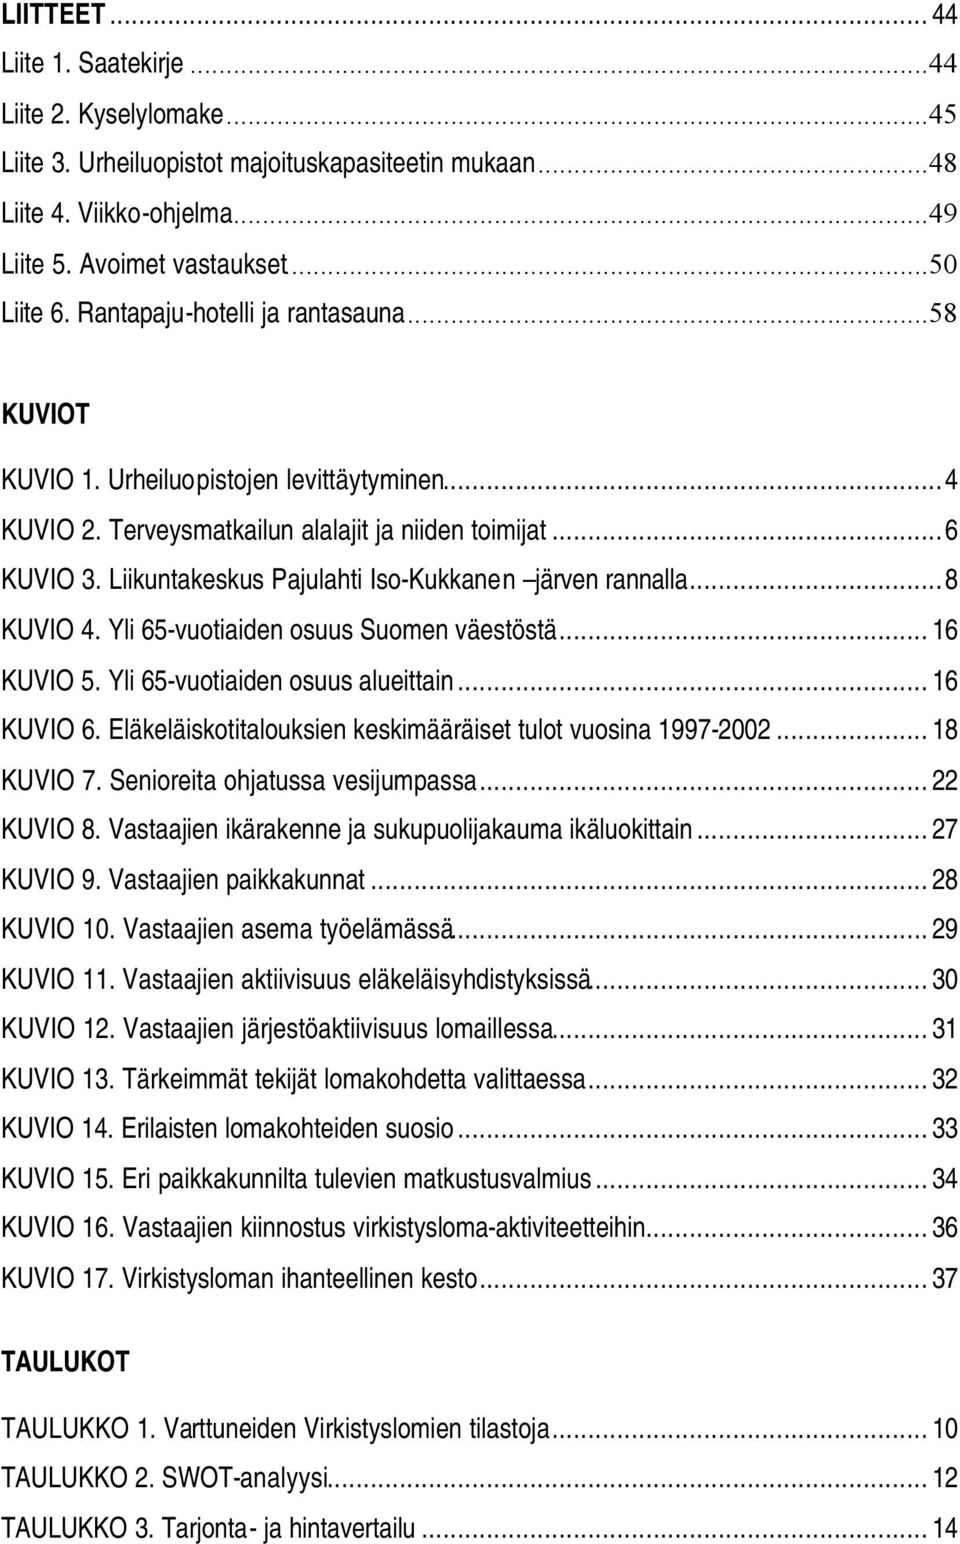 Liikuntakeskus Pajulahti Iso-Kukkanen järven rannalla...8 KUVIO 4. Yli 65-vuotiaiden osuus Suomen väestöstä... 16 KUVIO 5. Yli 65-vuotiaiden osuus alueittain... 16 KUVIO 6.